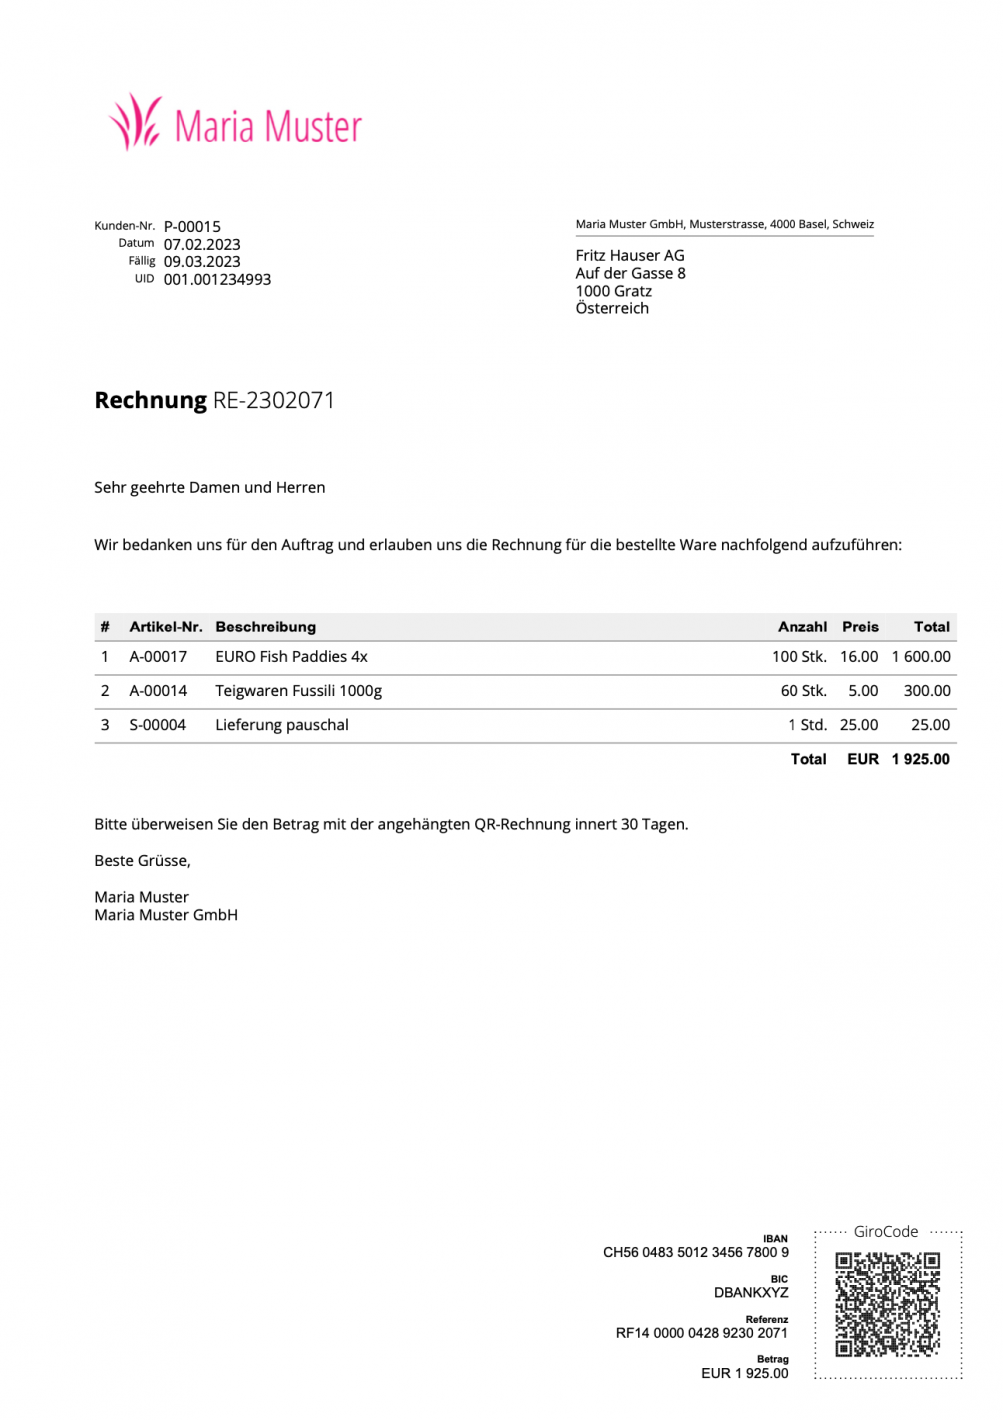 Screenshot of an EU Girocode invoice